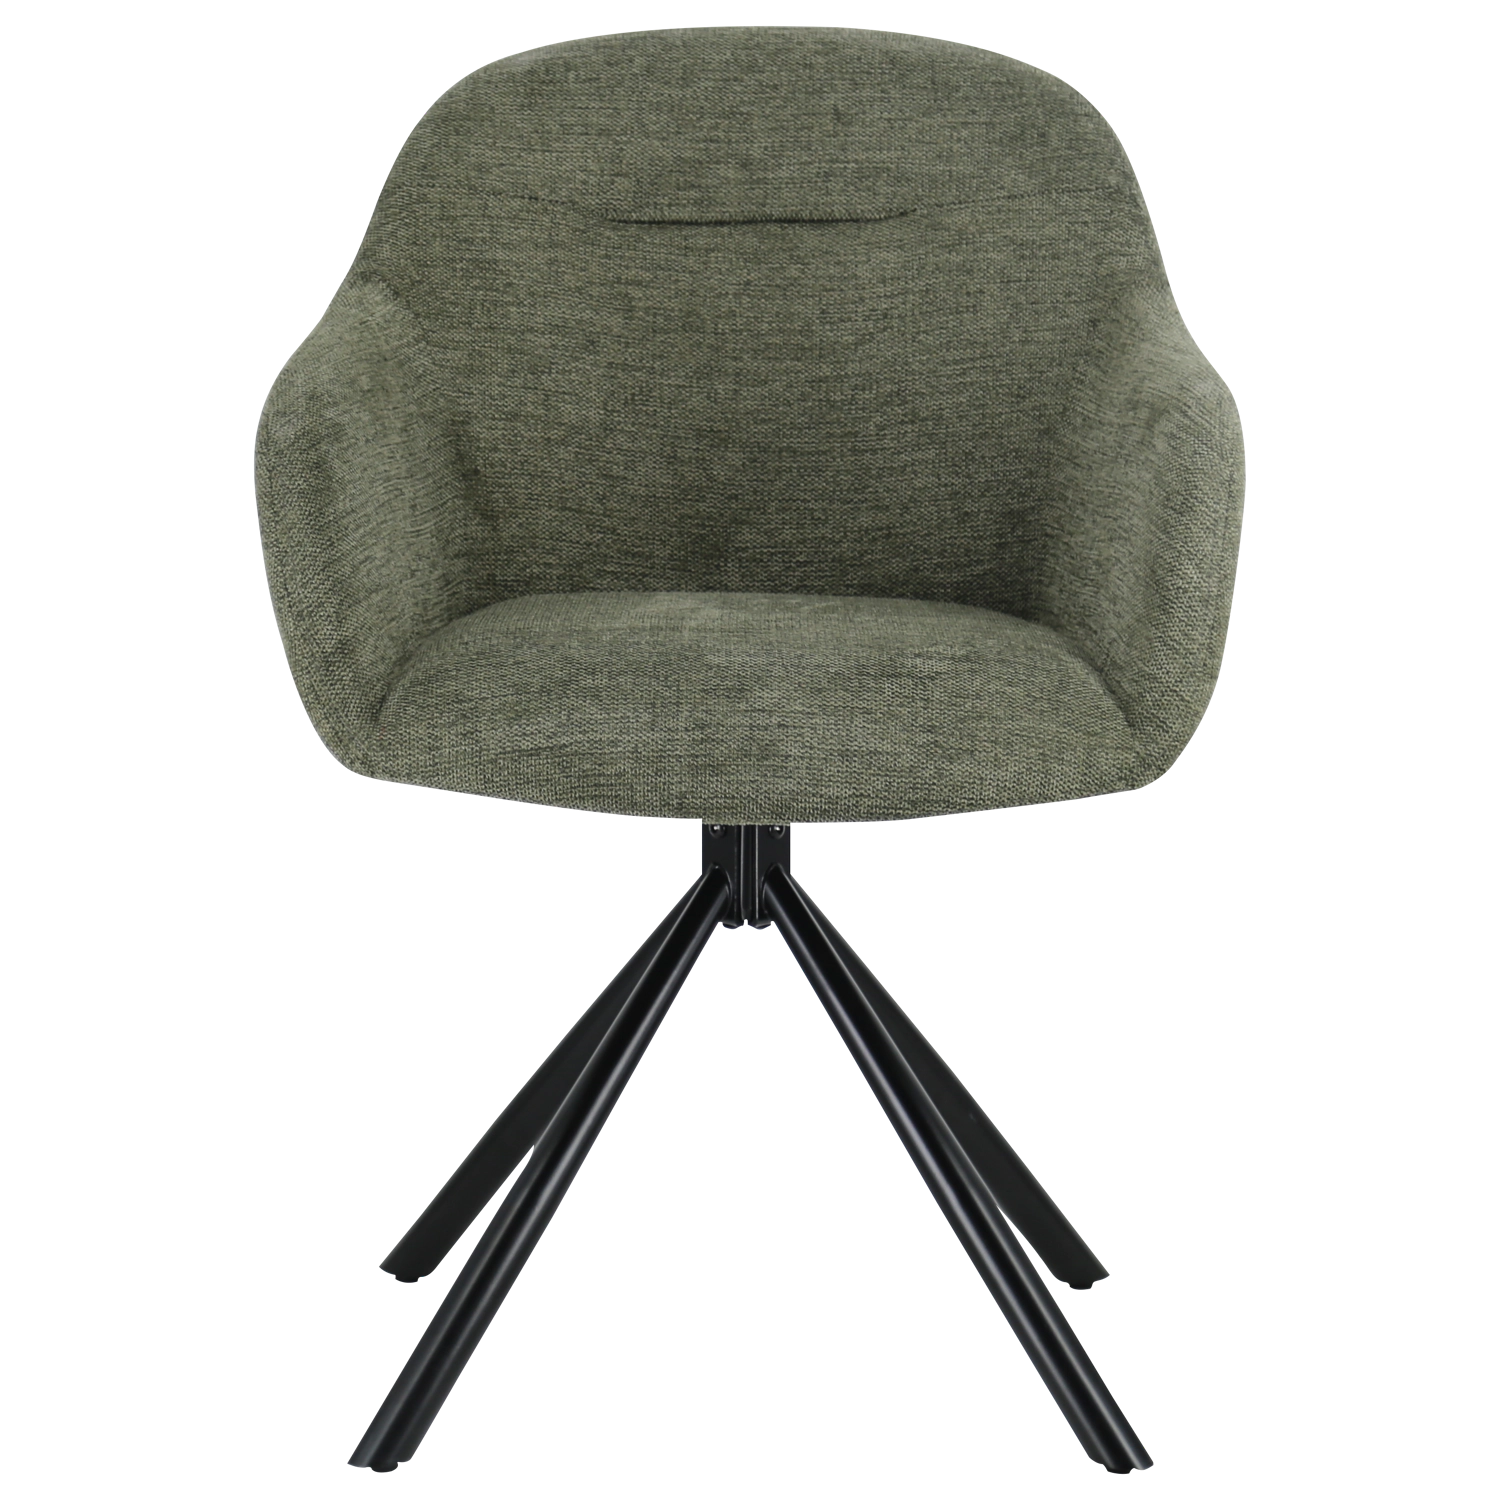 Conjunto de 2 cadeiras em tecido verde SAFFI